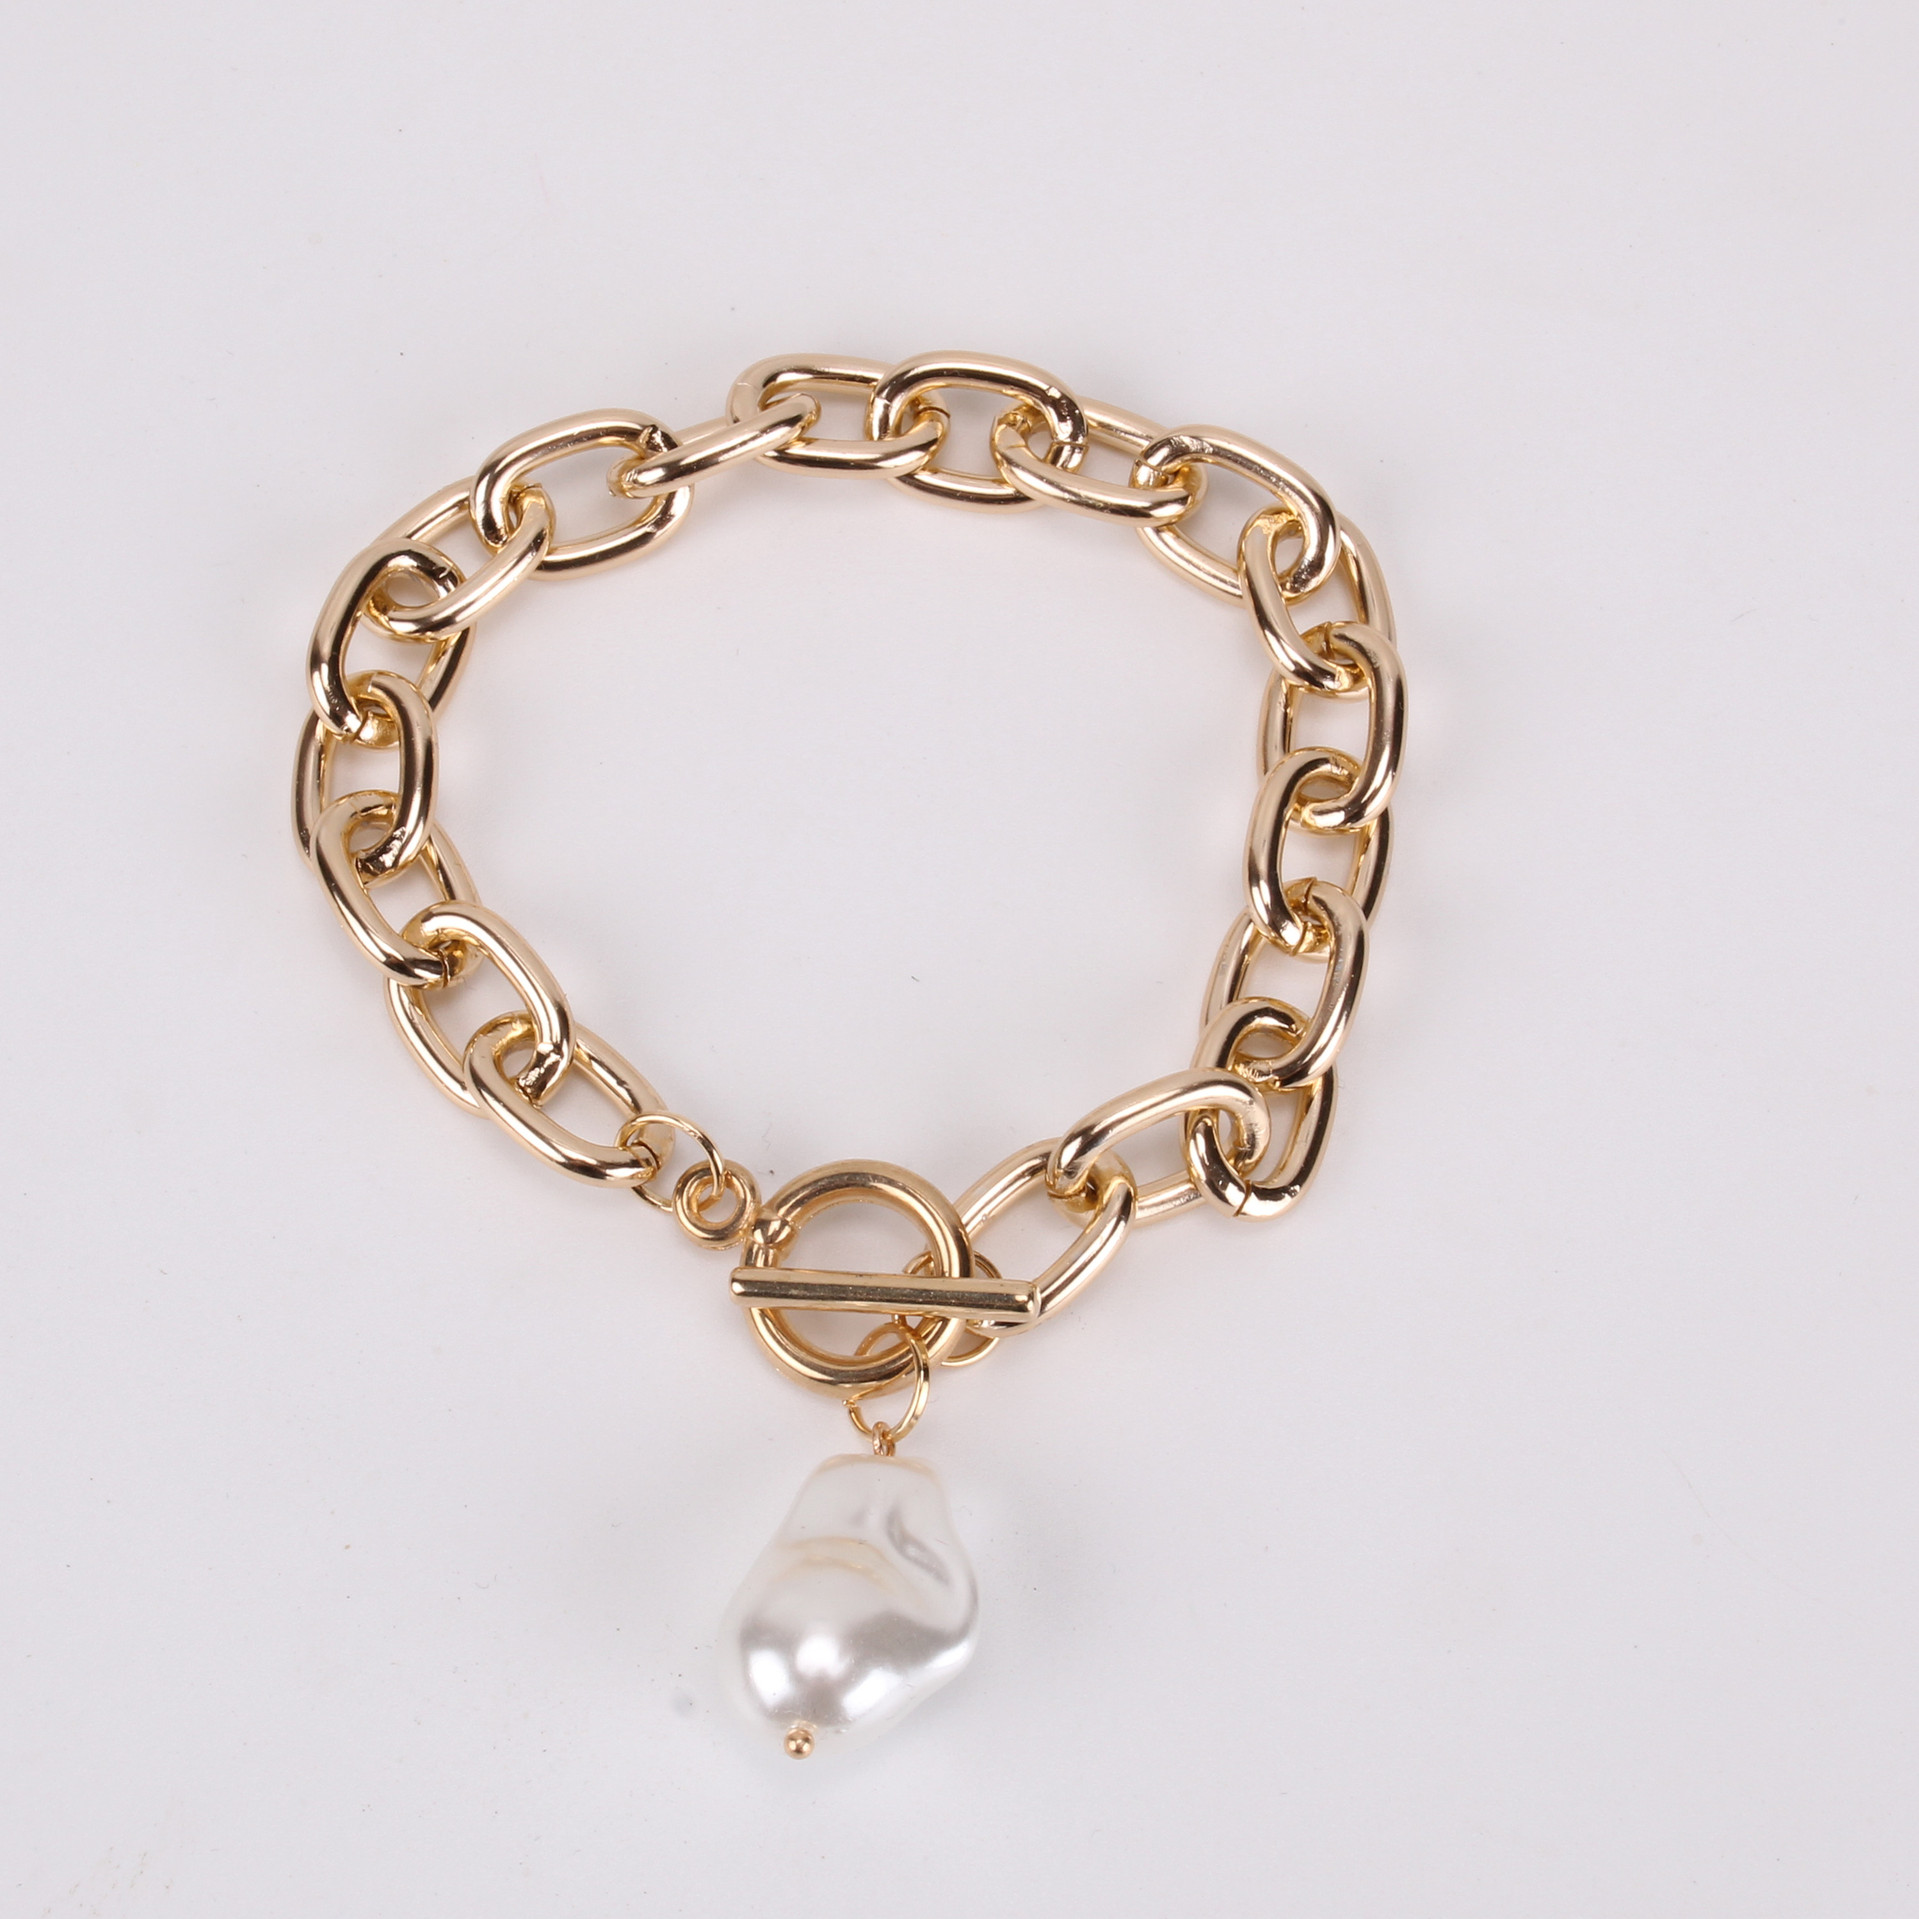 Cross chain bracelet